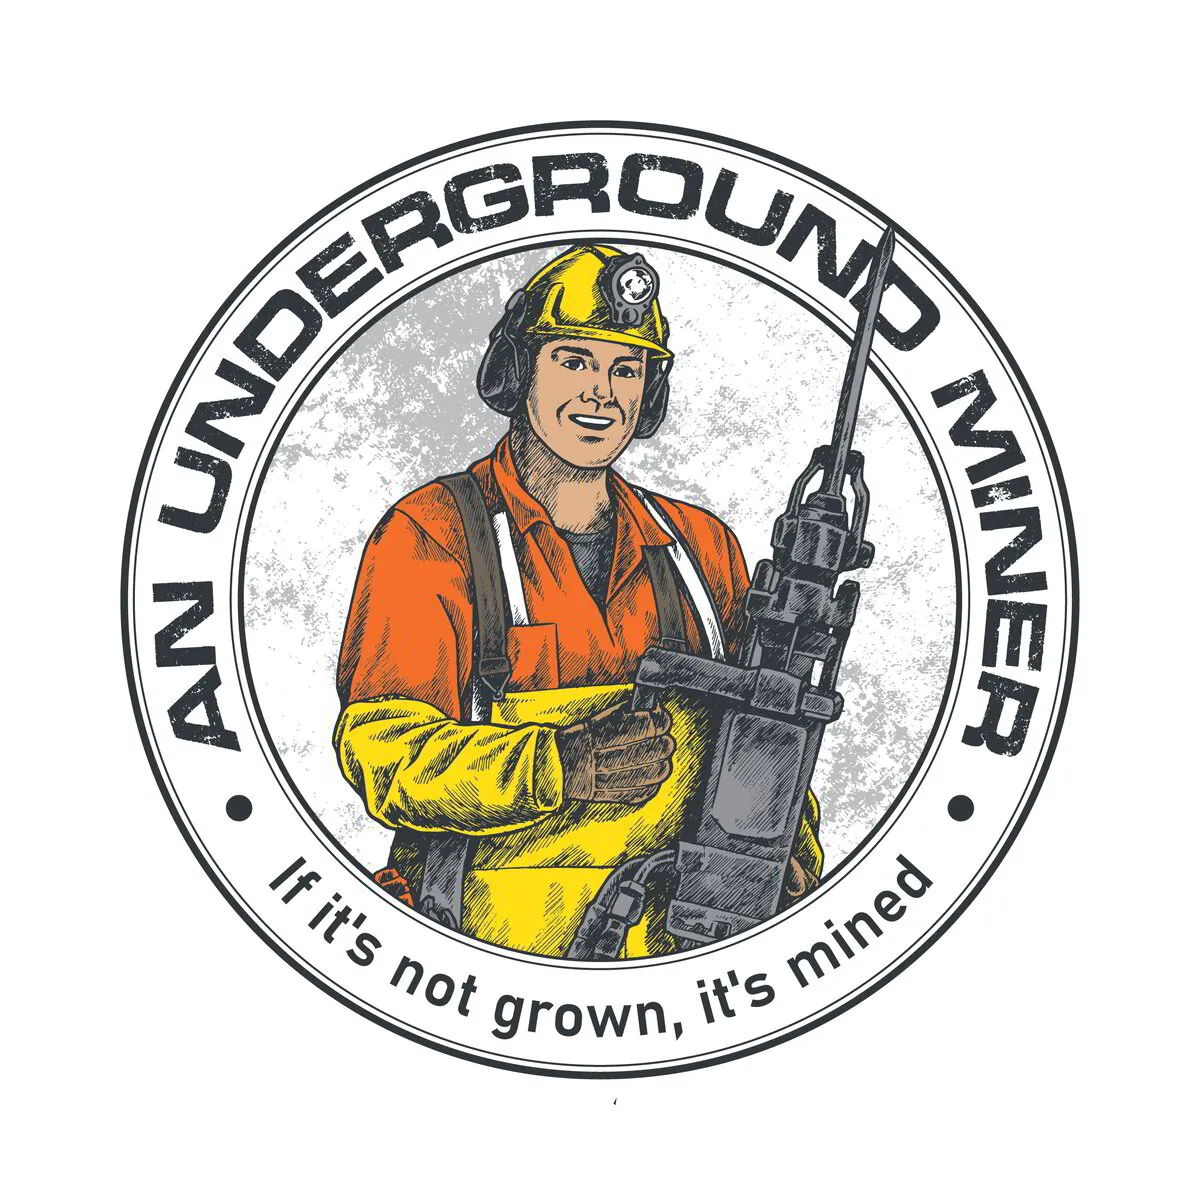 An Underground miner